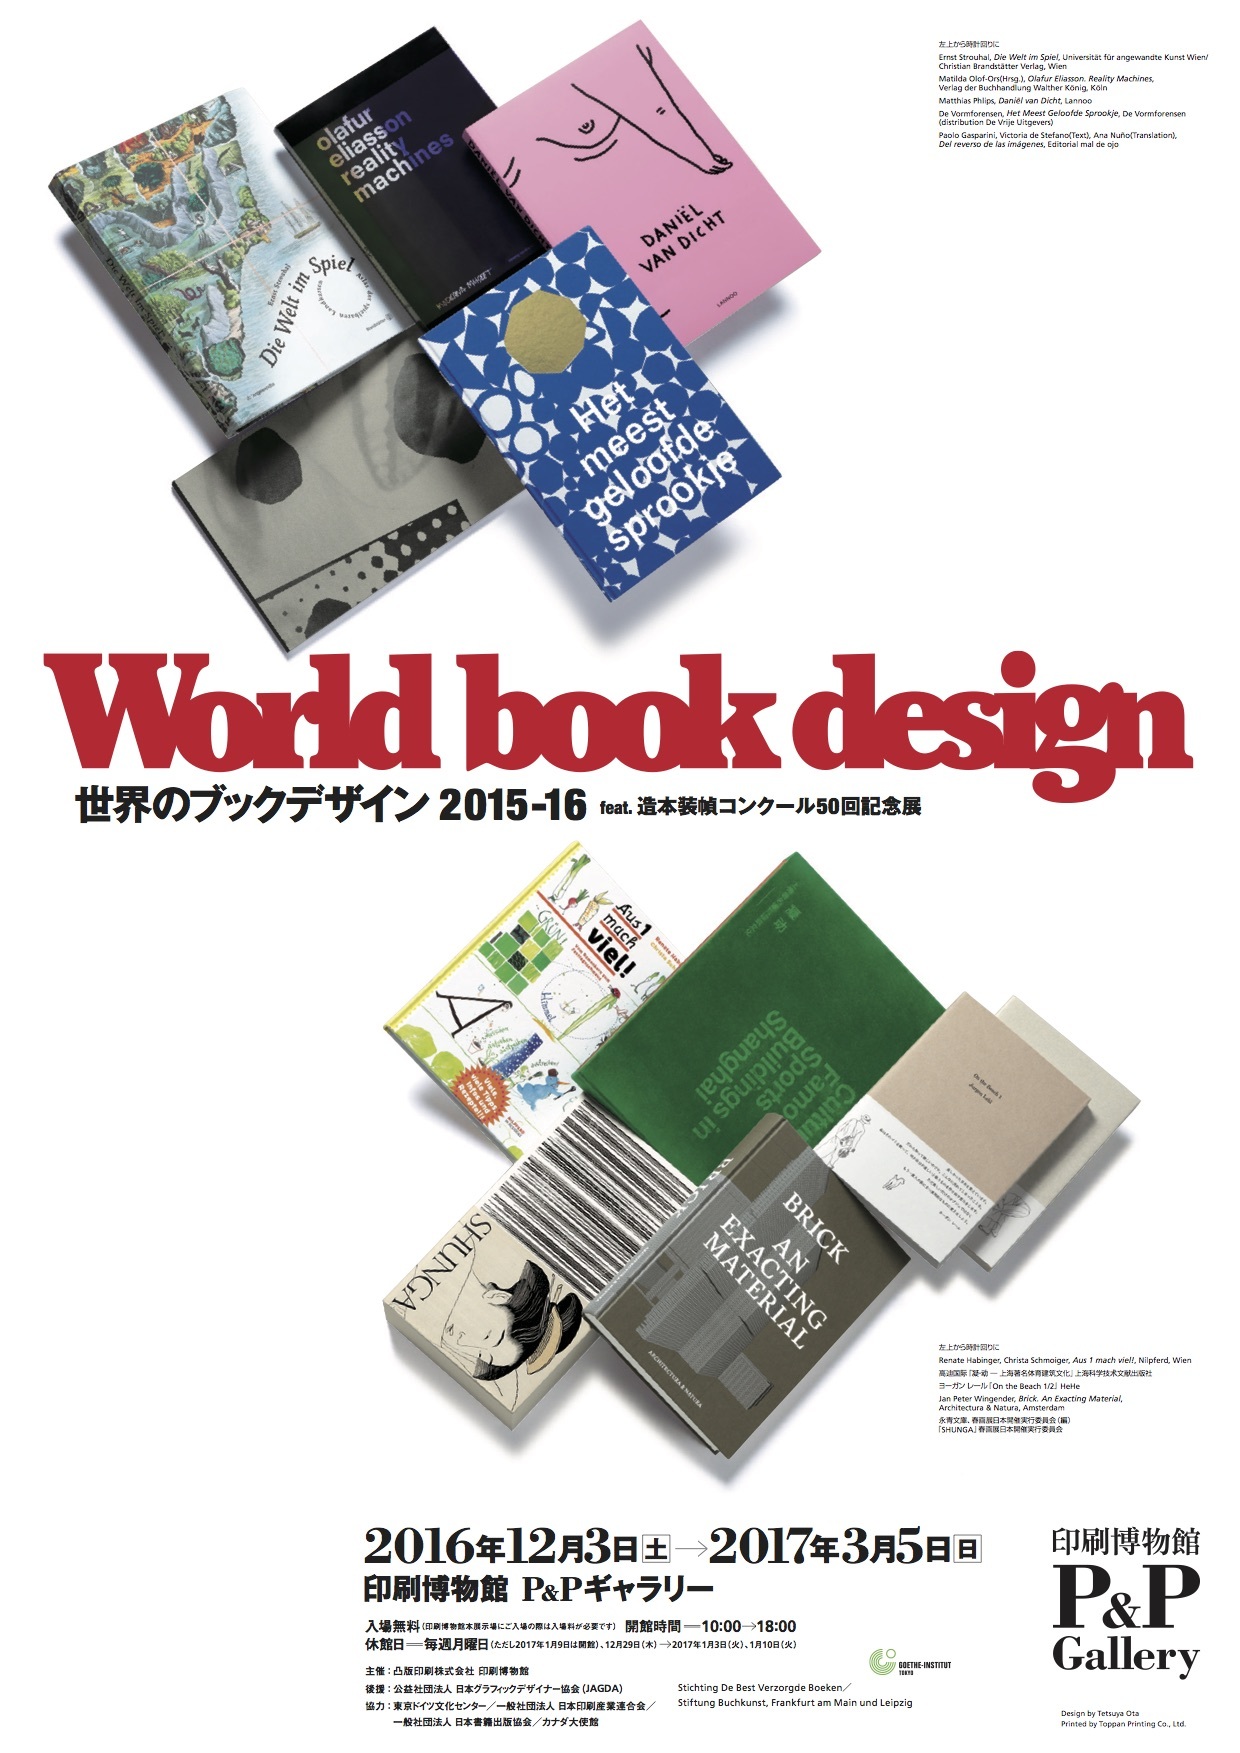 世界のブックデザイン2015-16 feat.造本装幀コンクール50回記念展